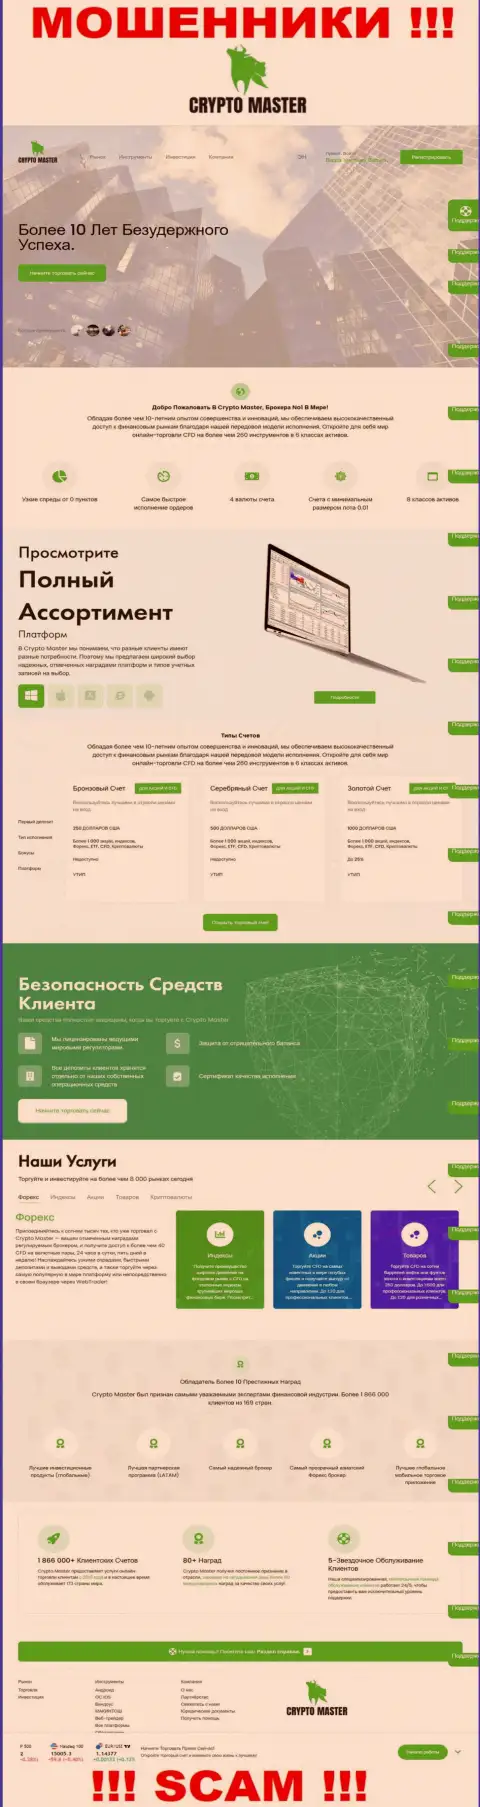 Официальная web-страница лохотронного проекта КриптоМастер